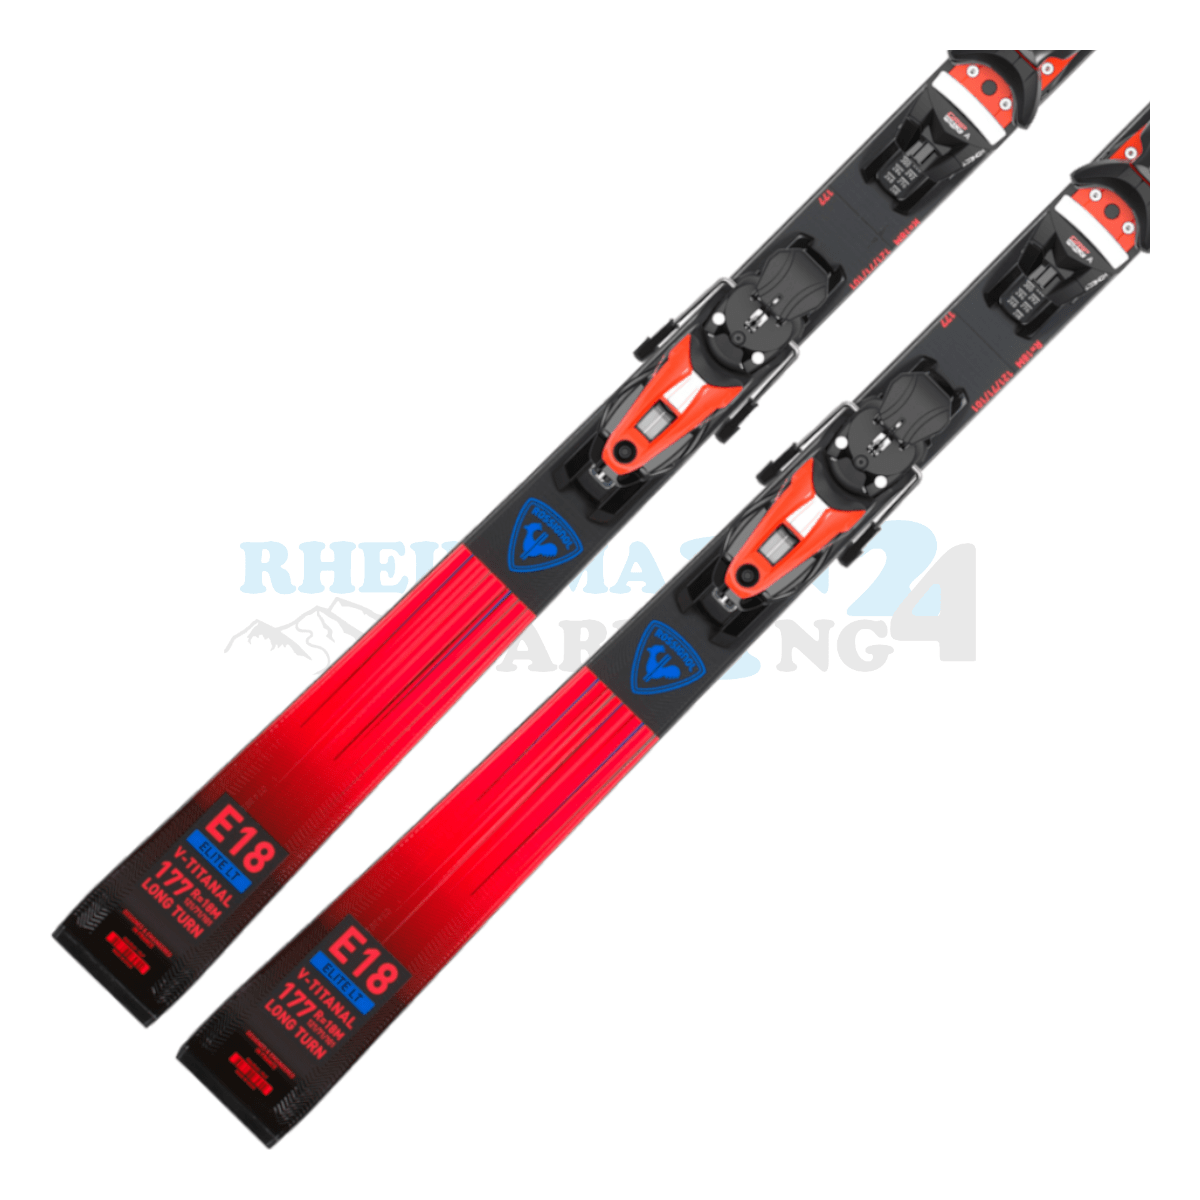 Rossignol Hero Elite LT-TI mit Platte sowie Bindung, der Ski ist in der Farbe rot-schwarz, die Ansicht des unteren Teils des Skis